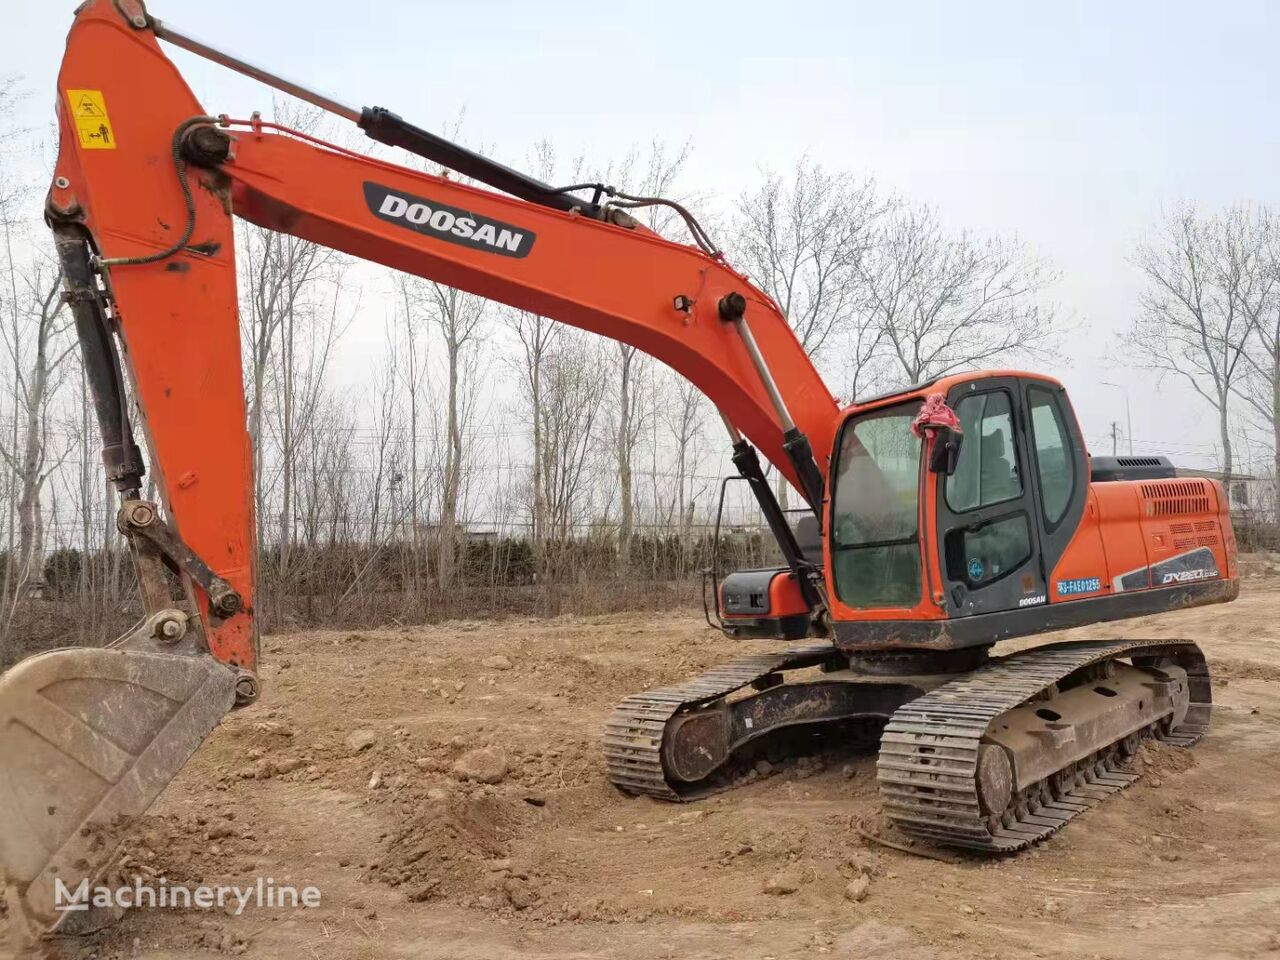 Doosan DX220LC tracked excavator